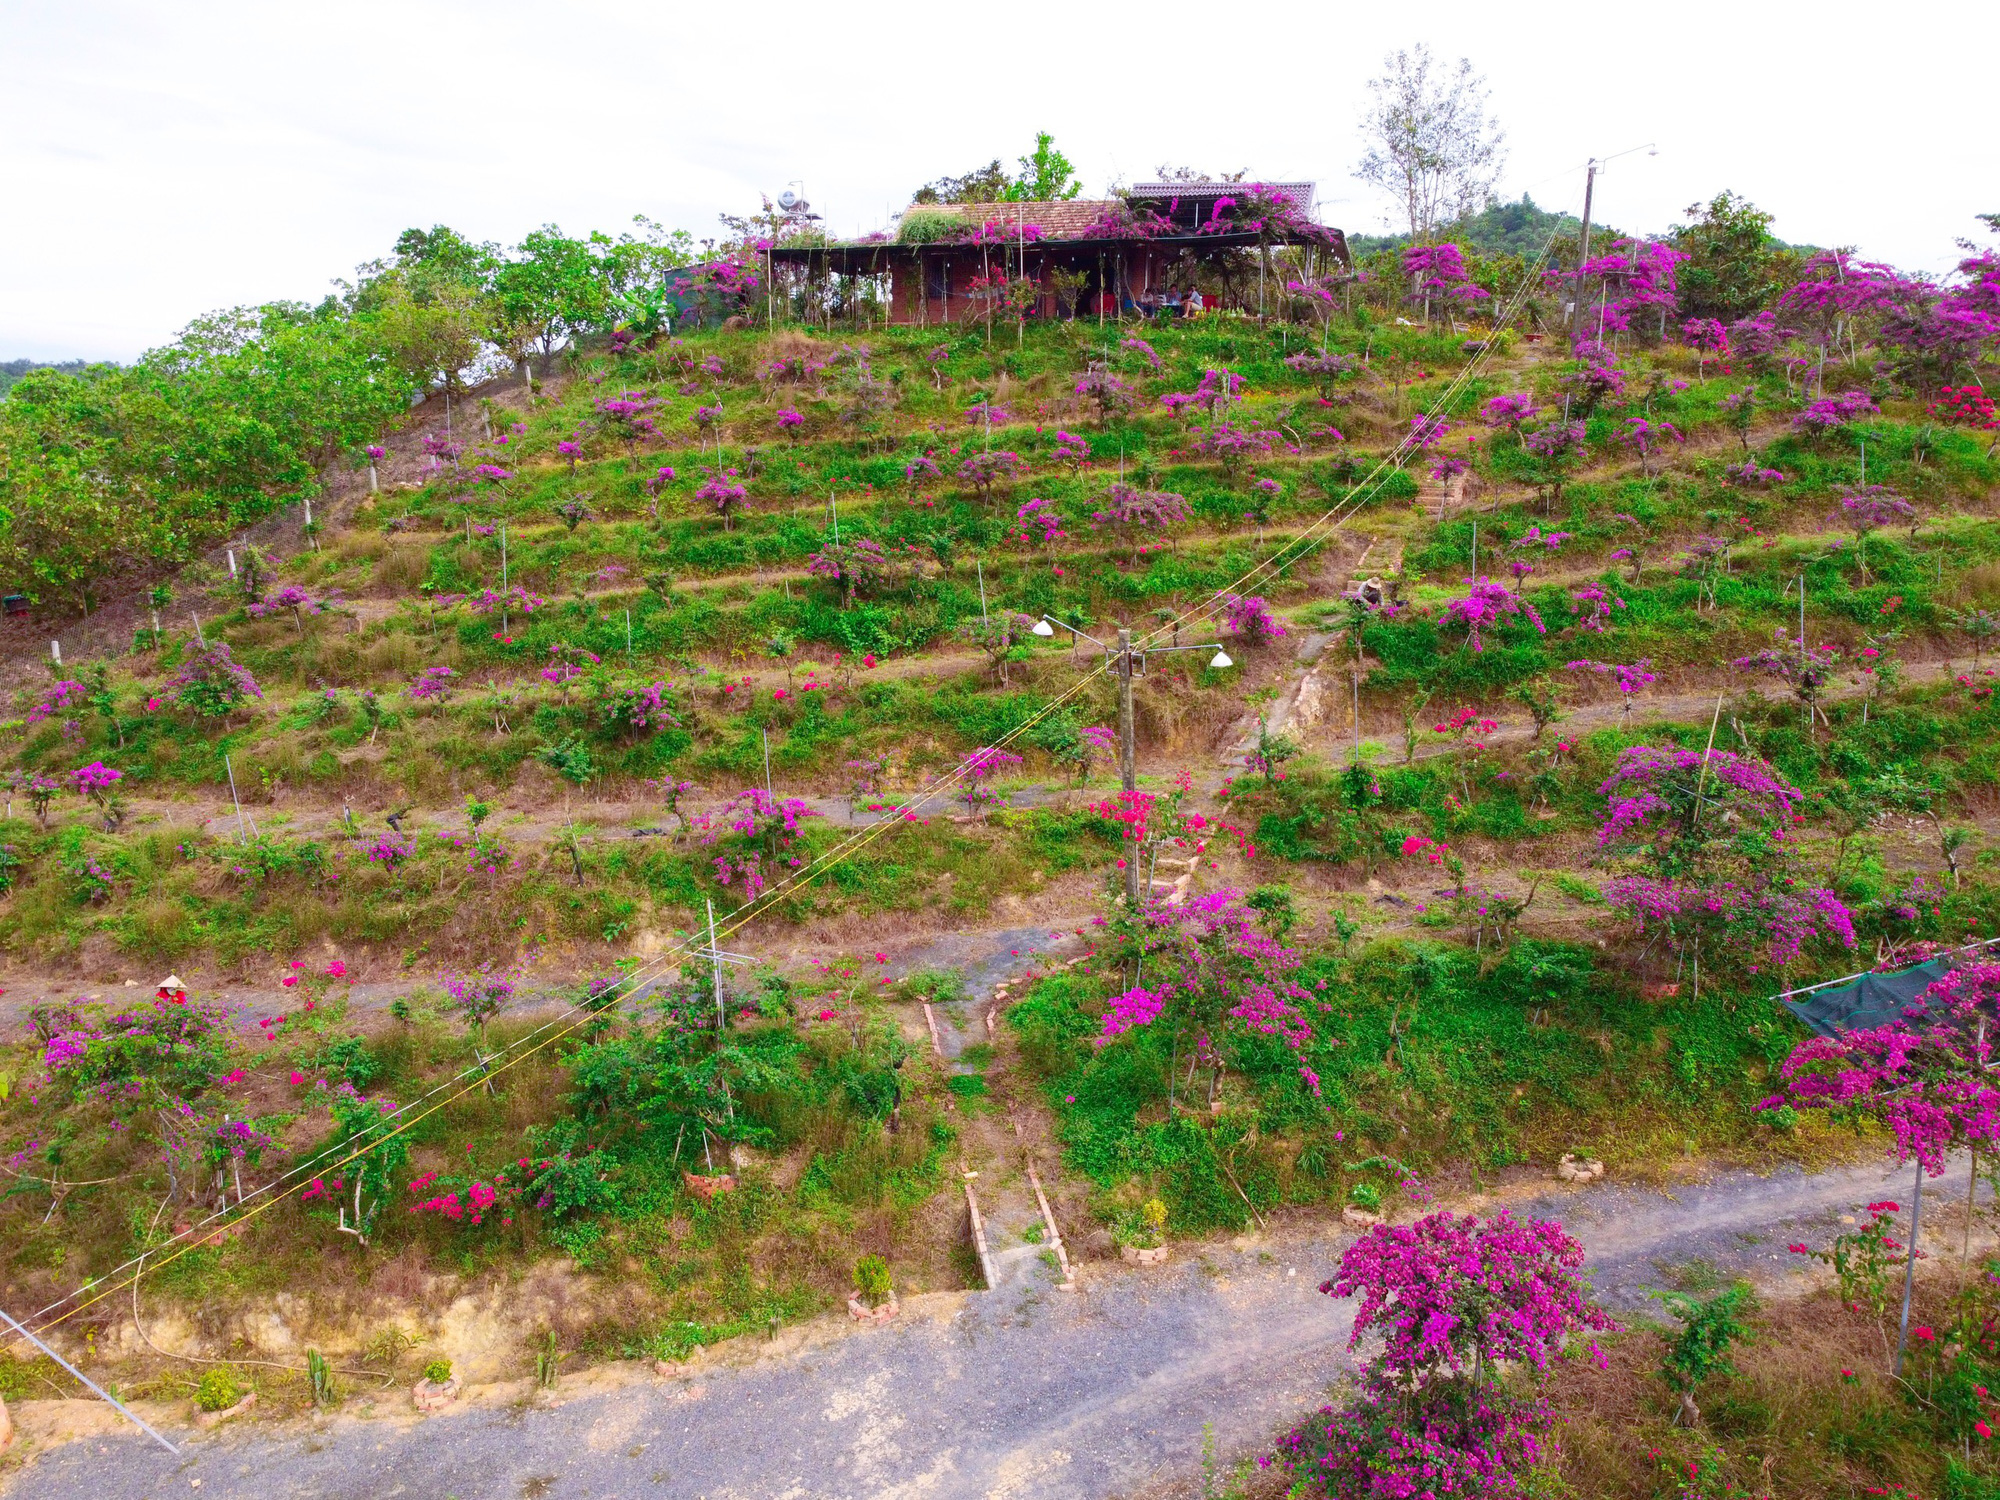 Vợ chồng biến 5500 m2 đất cằn thành khu đồi hoa giấy đẹp như mơ ở Lâm Đồng - Ảnh 10.